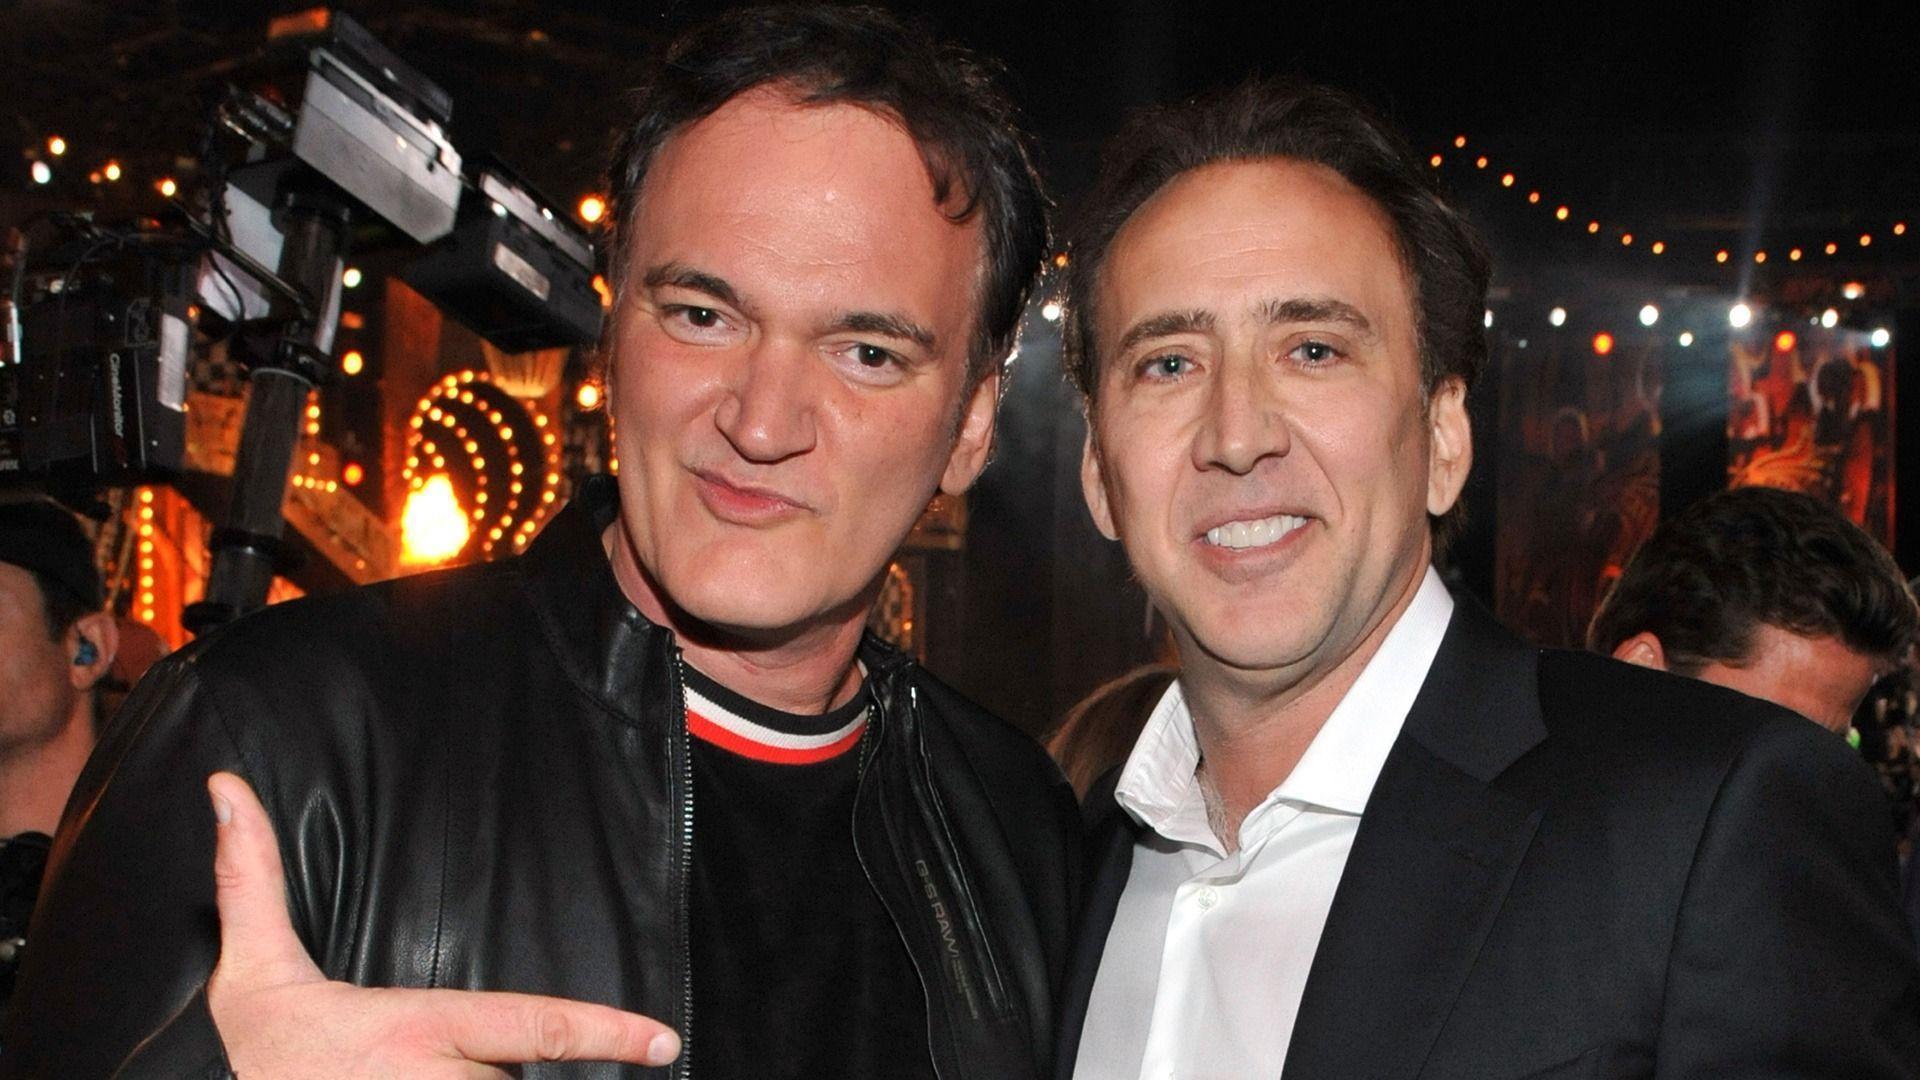 Quentin Tarantino and Nicolas Cage 1920 x 1080 Wallpaper